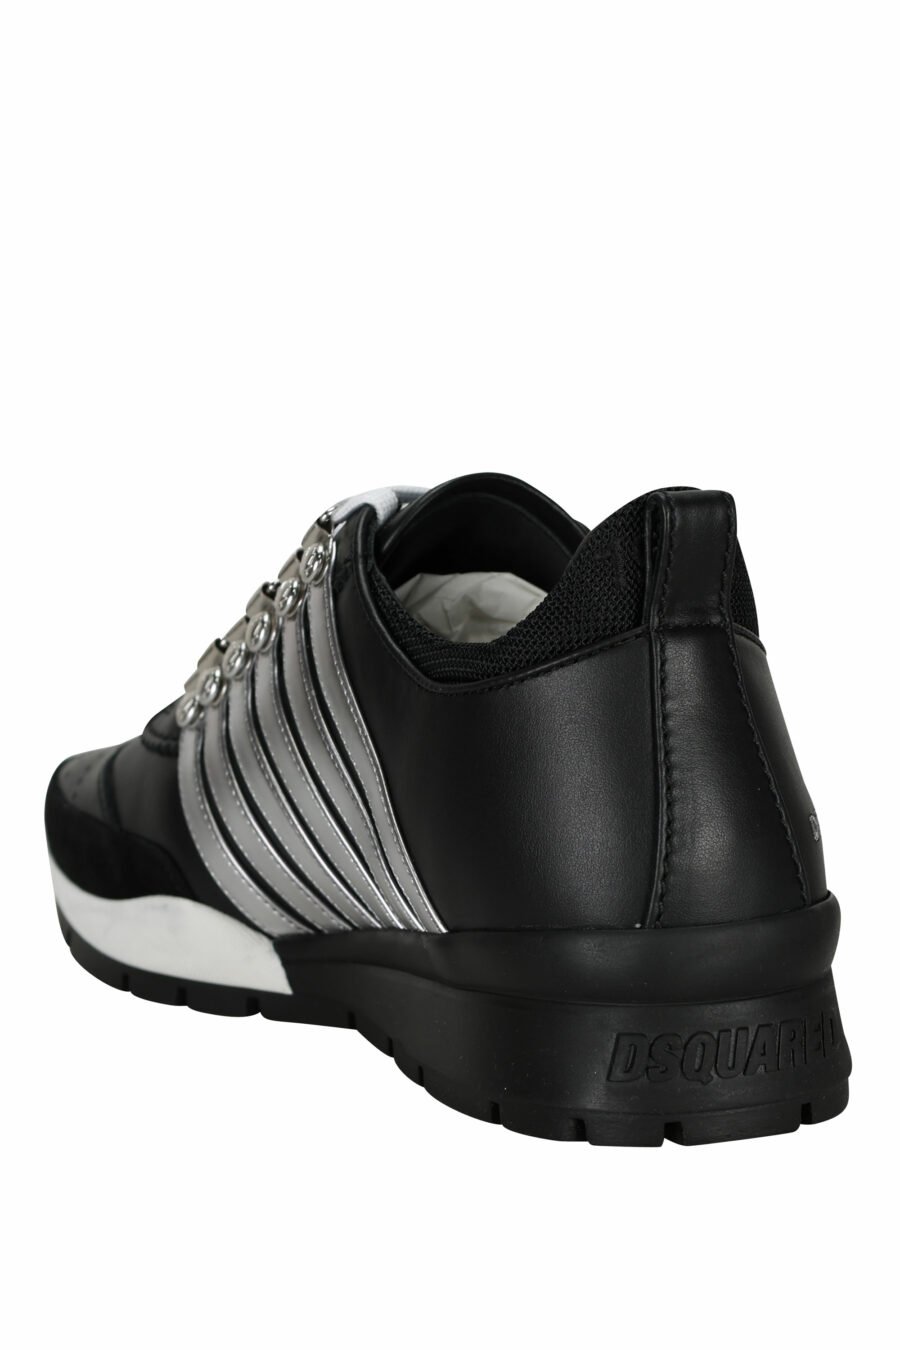 Zapatillas negras con lineas plateadas y suela bicolor - 8055777301289 3